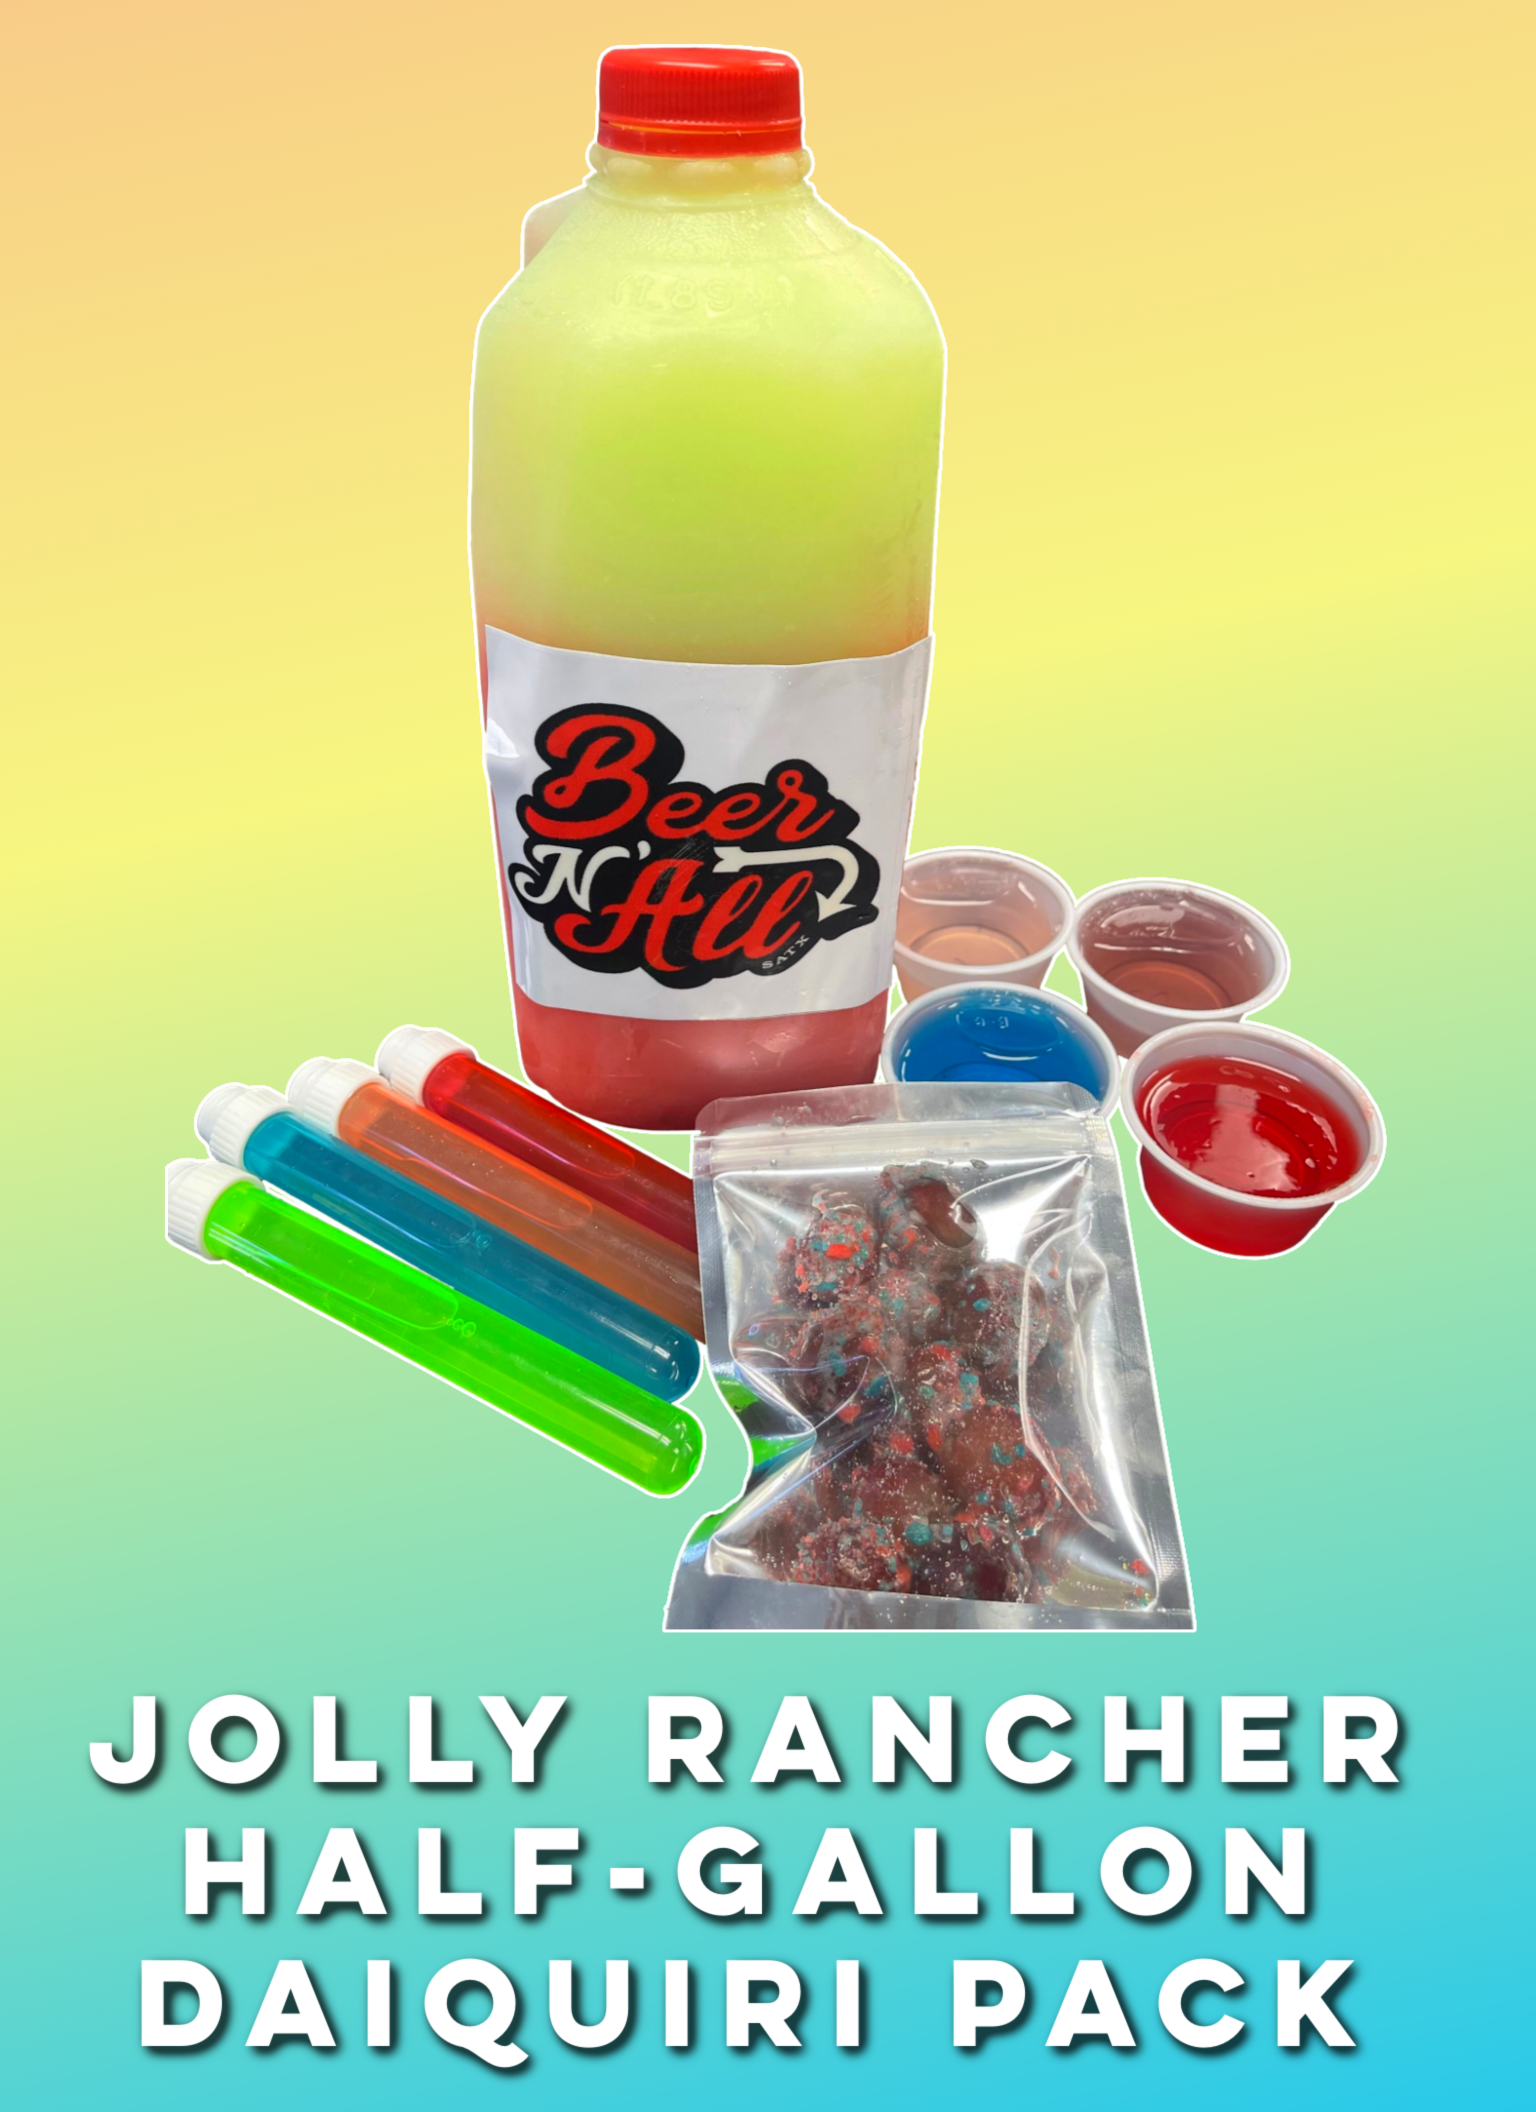 Jolly Rancher Half-Gallon Daiquiri Pack